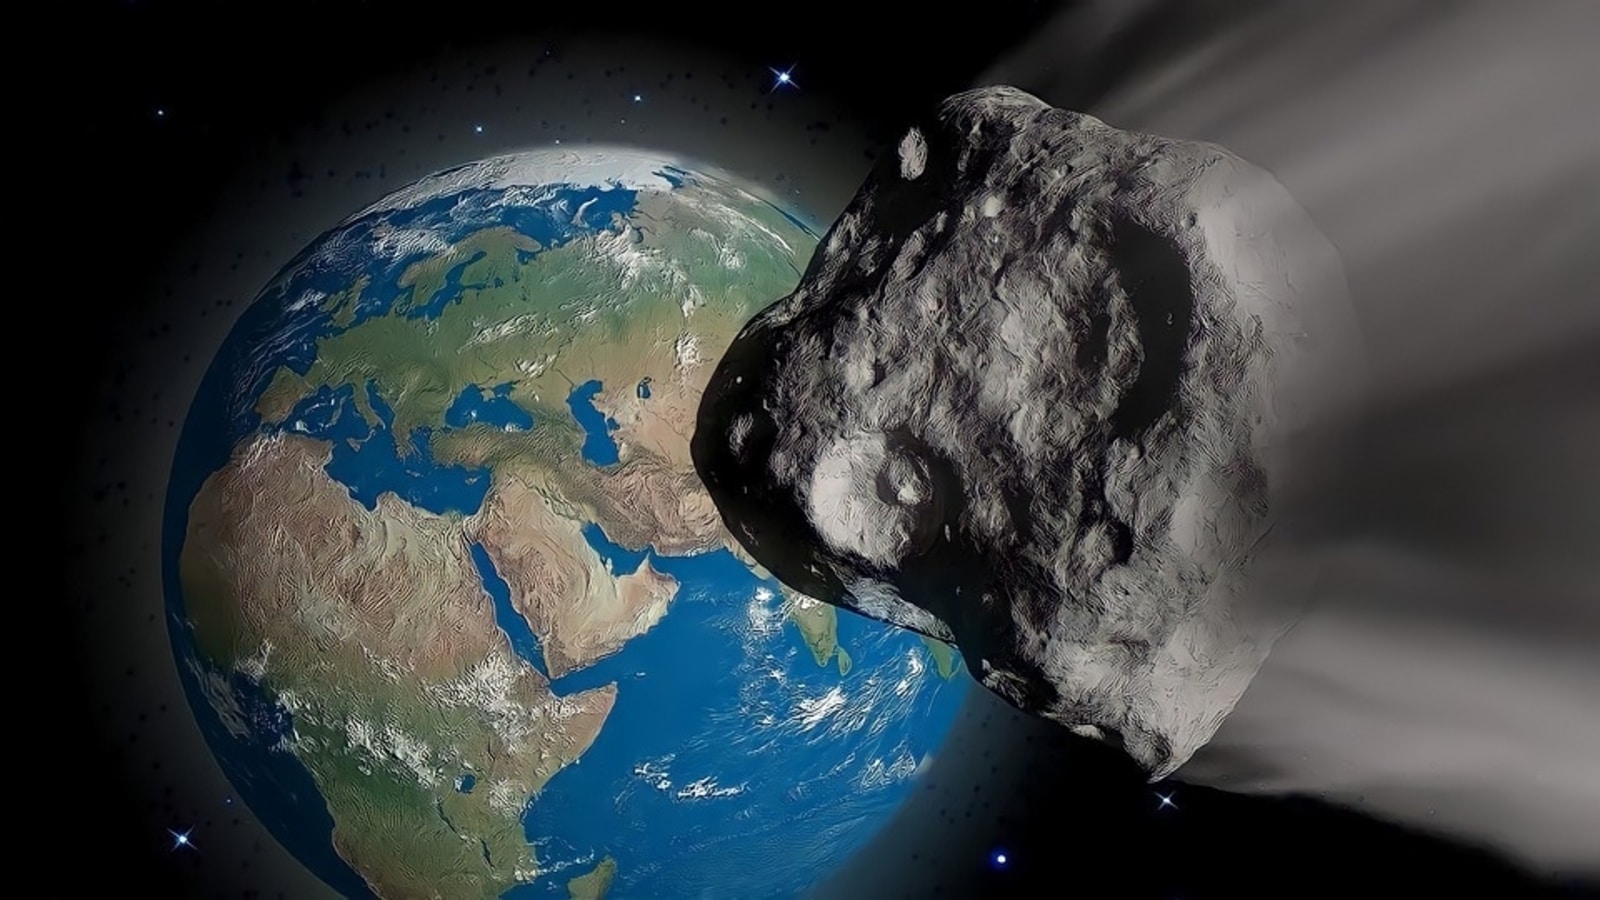 Uwaga asteroida!  Asteroida wielkości samolotu zmierza w kierunku Ziemi z ognistą prędkością 53 171 kilometrów na godzinę